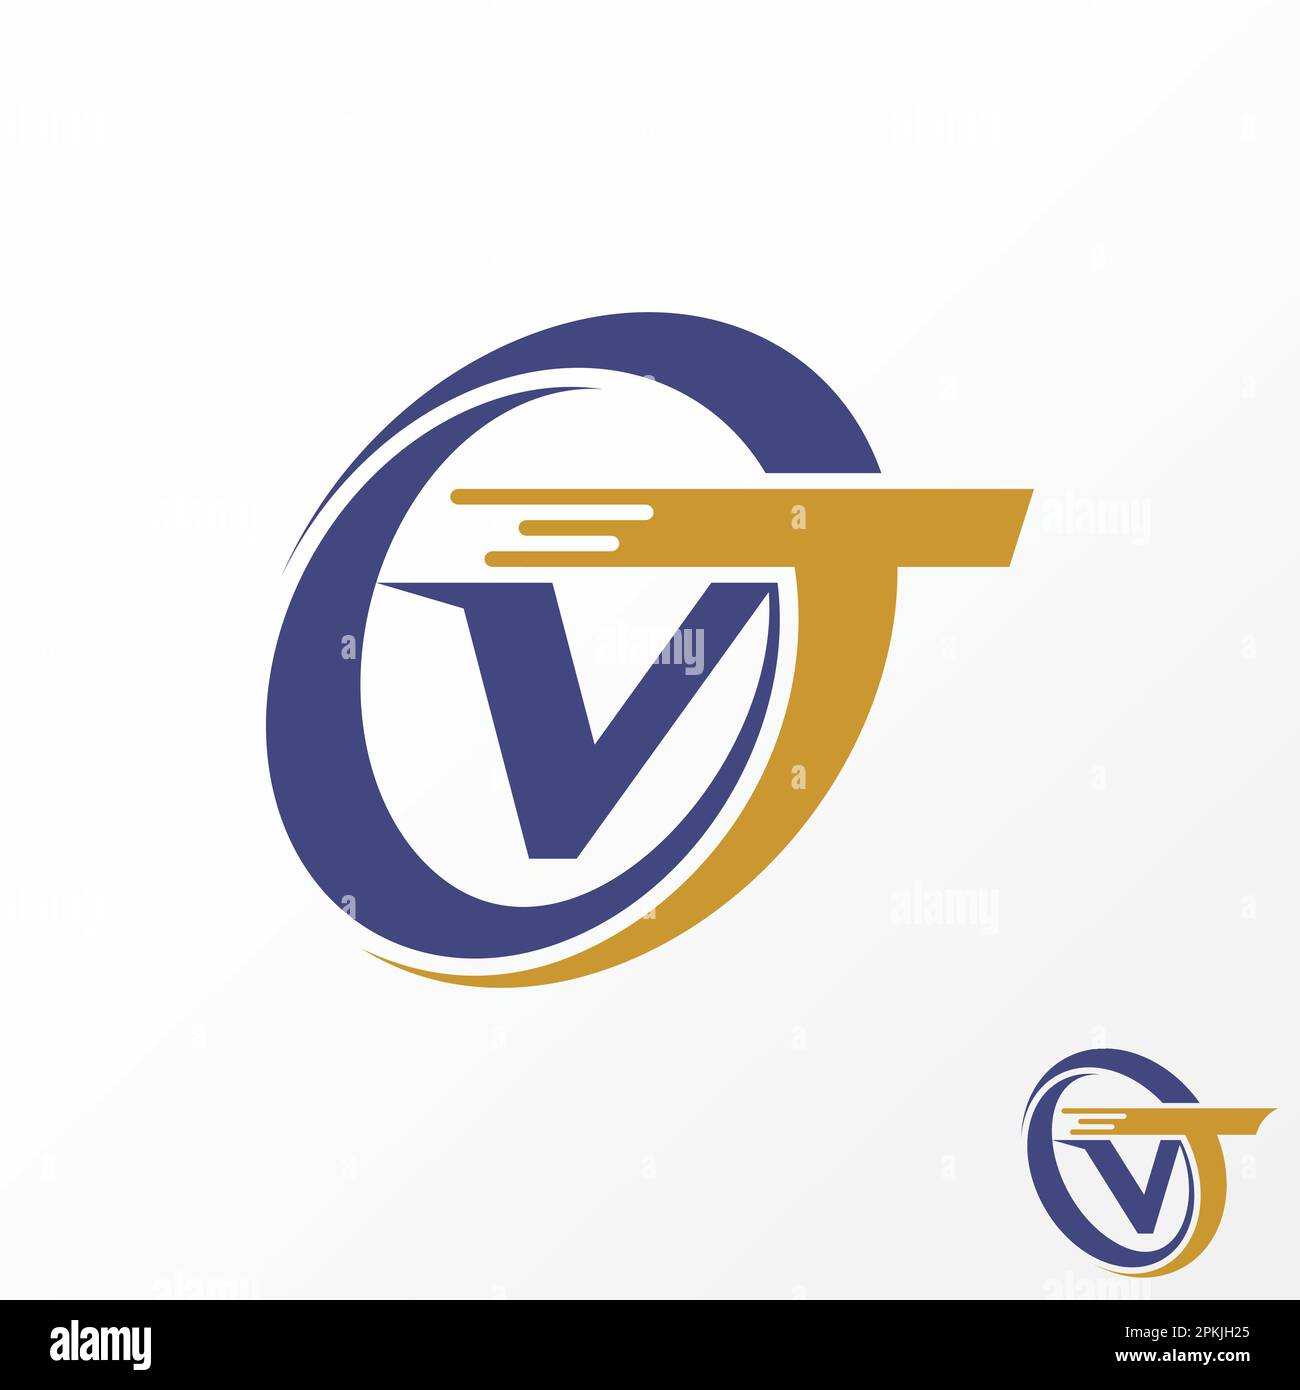 Logo-Design Grafikkonzept kreativ Abstraktes Premium-Vektorpapier VT Fast Font in kreisförmigem Swoosh. Im Zusammenhang mit dem Transport von Monographien Stock Vektor